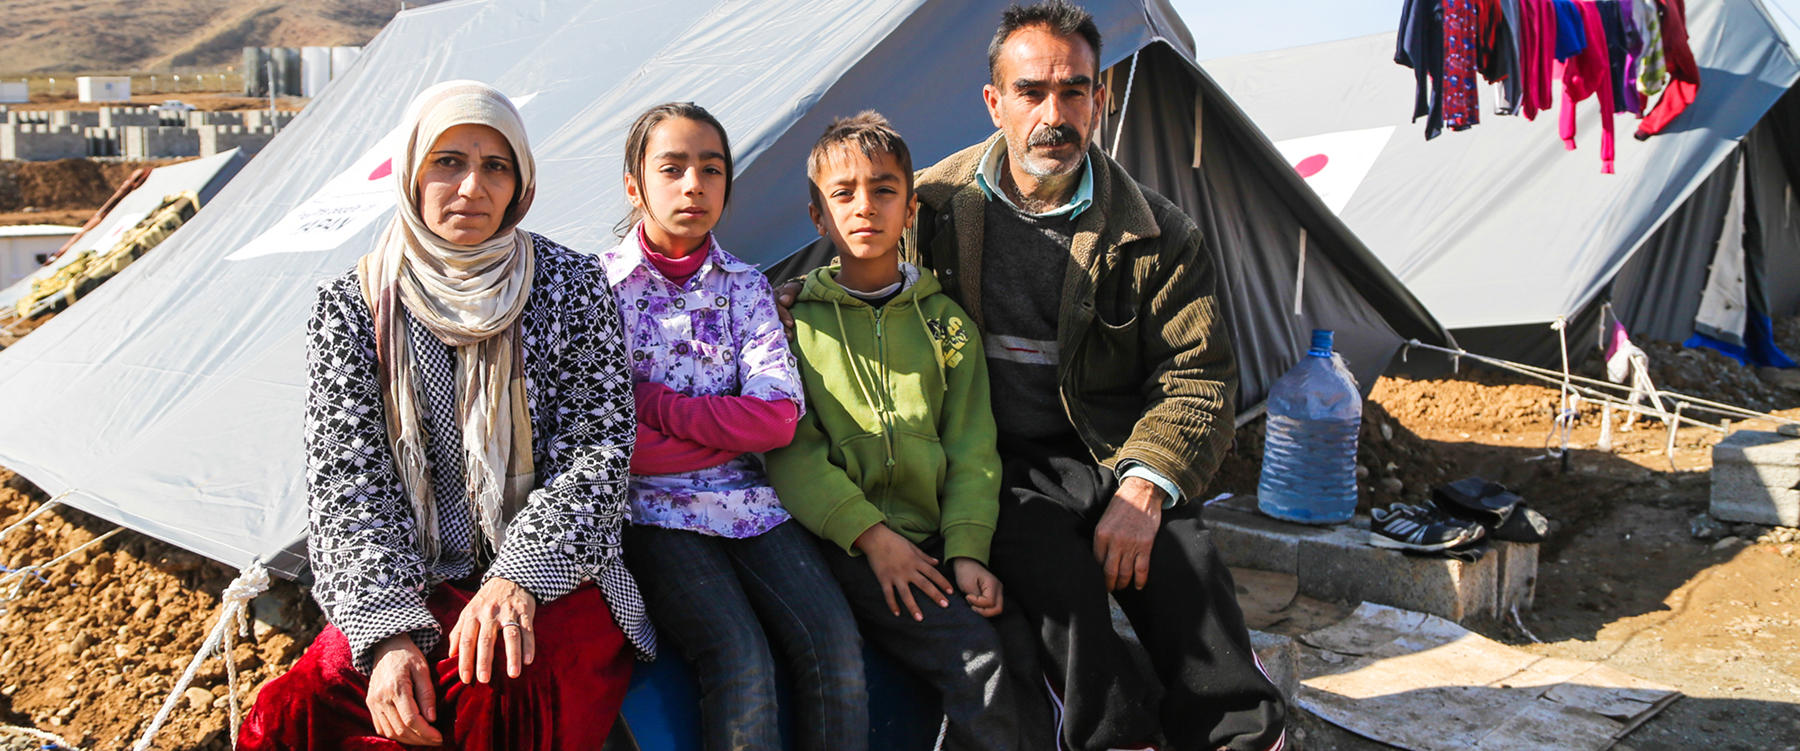 Khalil Ibrahim (rechts), Syrische vluchteling uit Aleppo, vluchtelingenkamp. | Foto: IOM, 2014